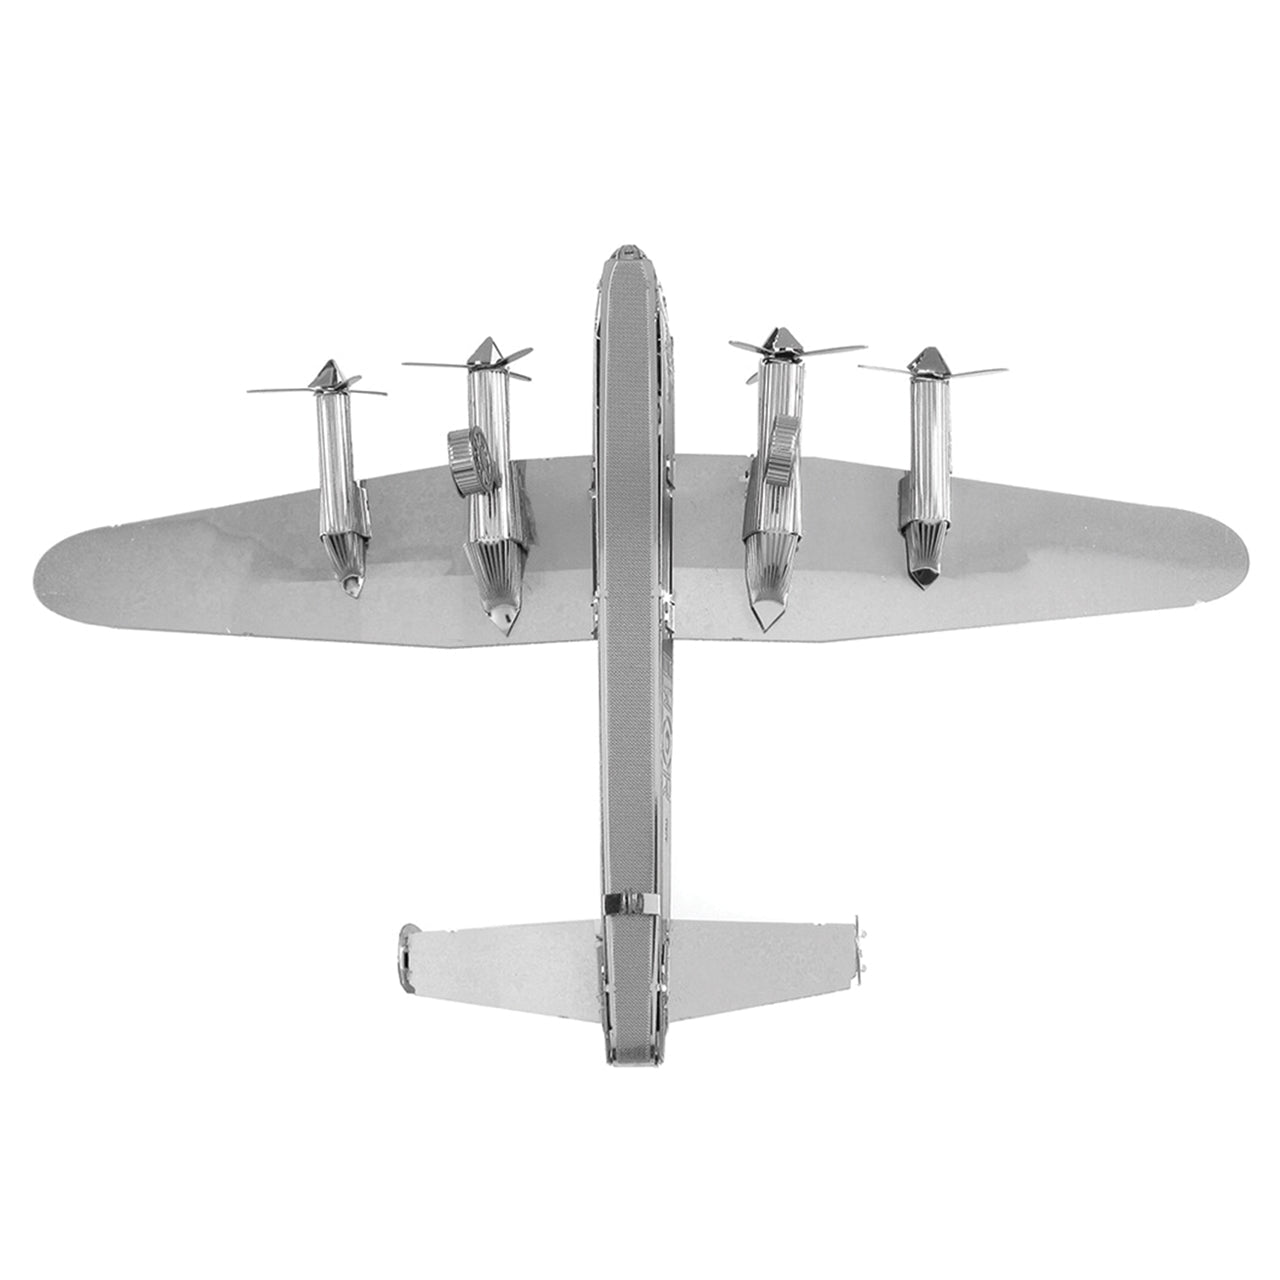 Avro Lancaster Bomber 3D Steel Model Kit Metal Earth